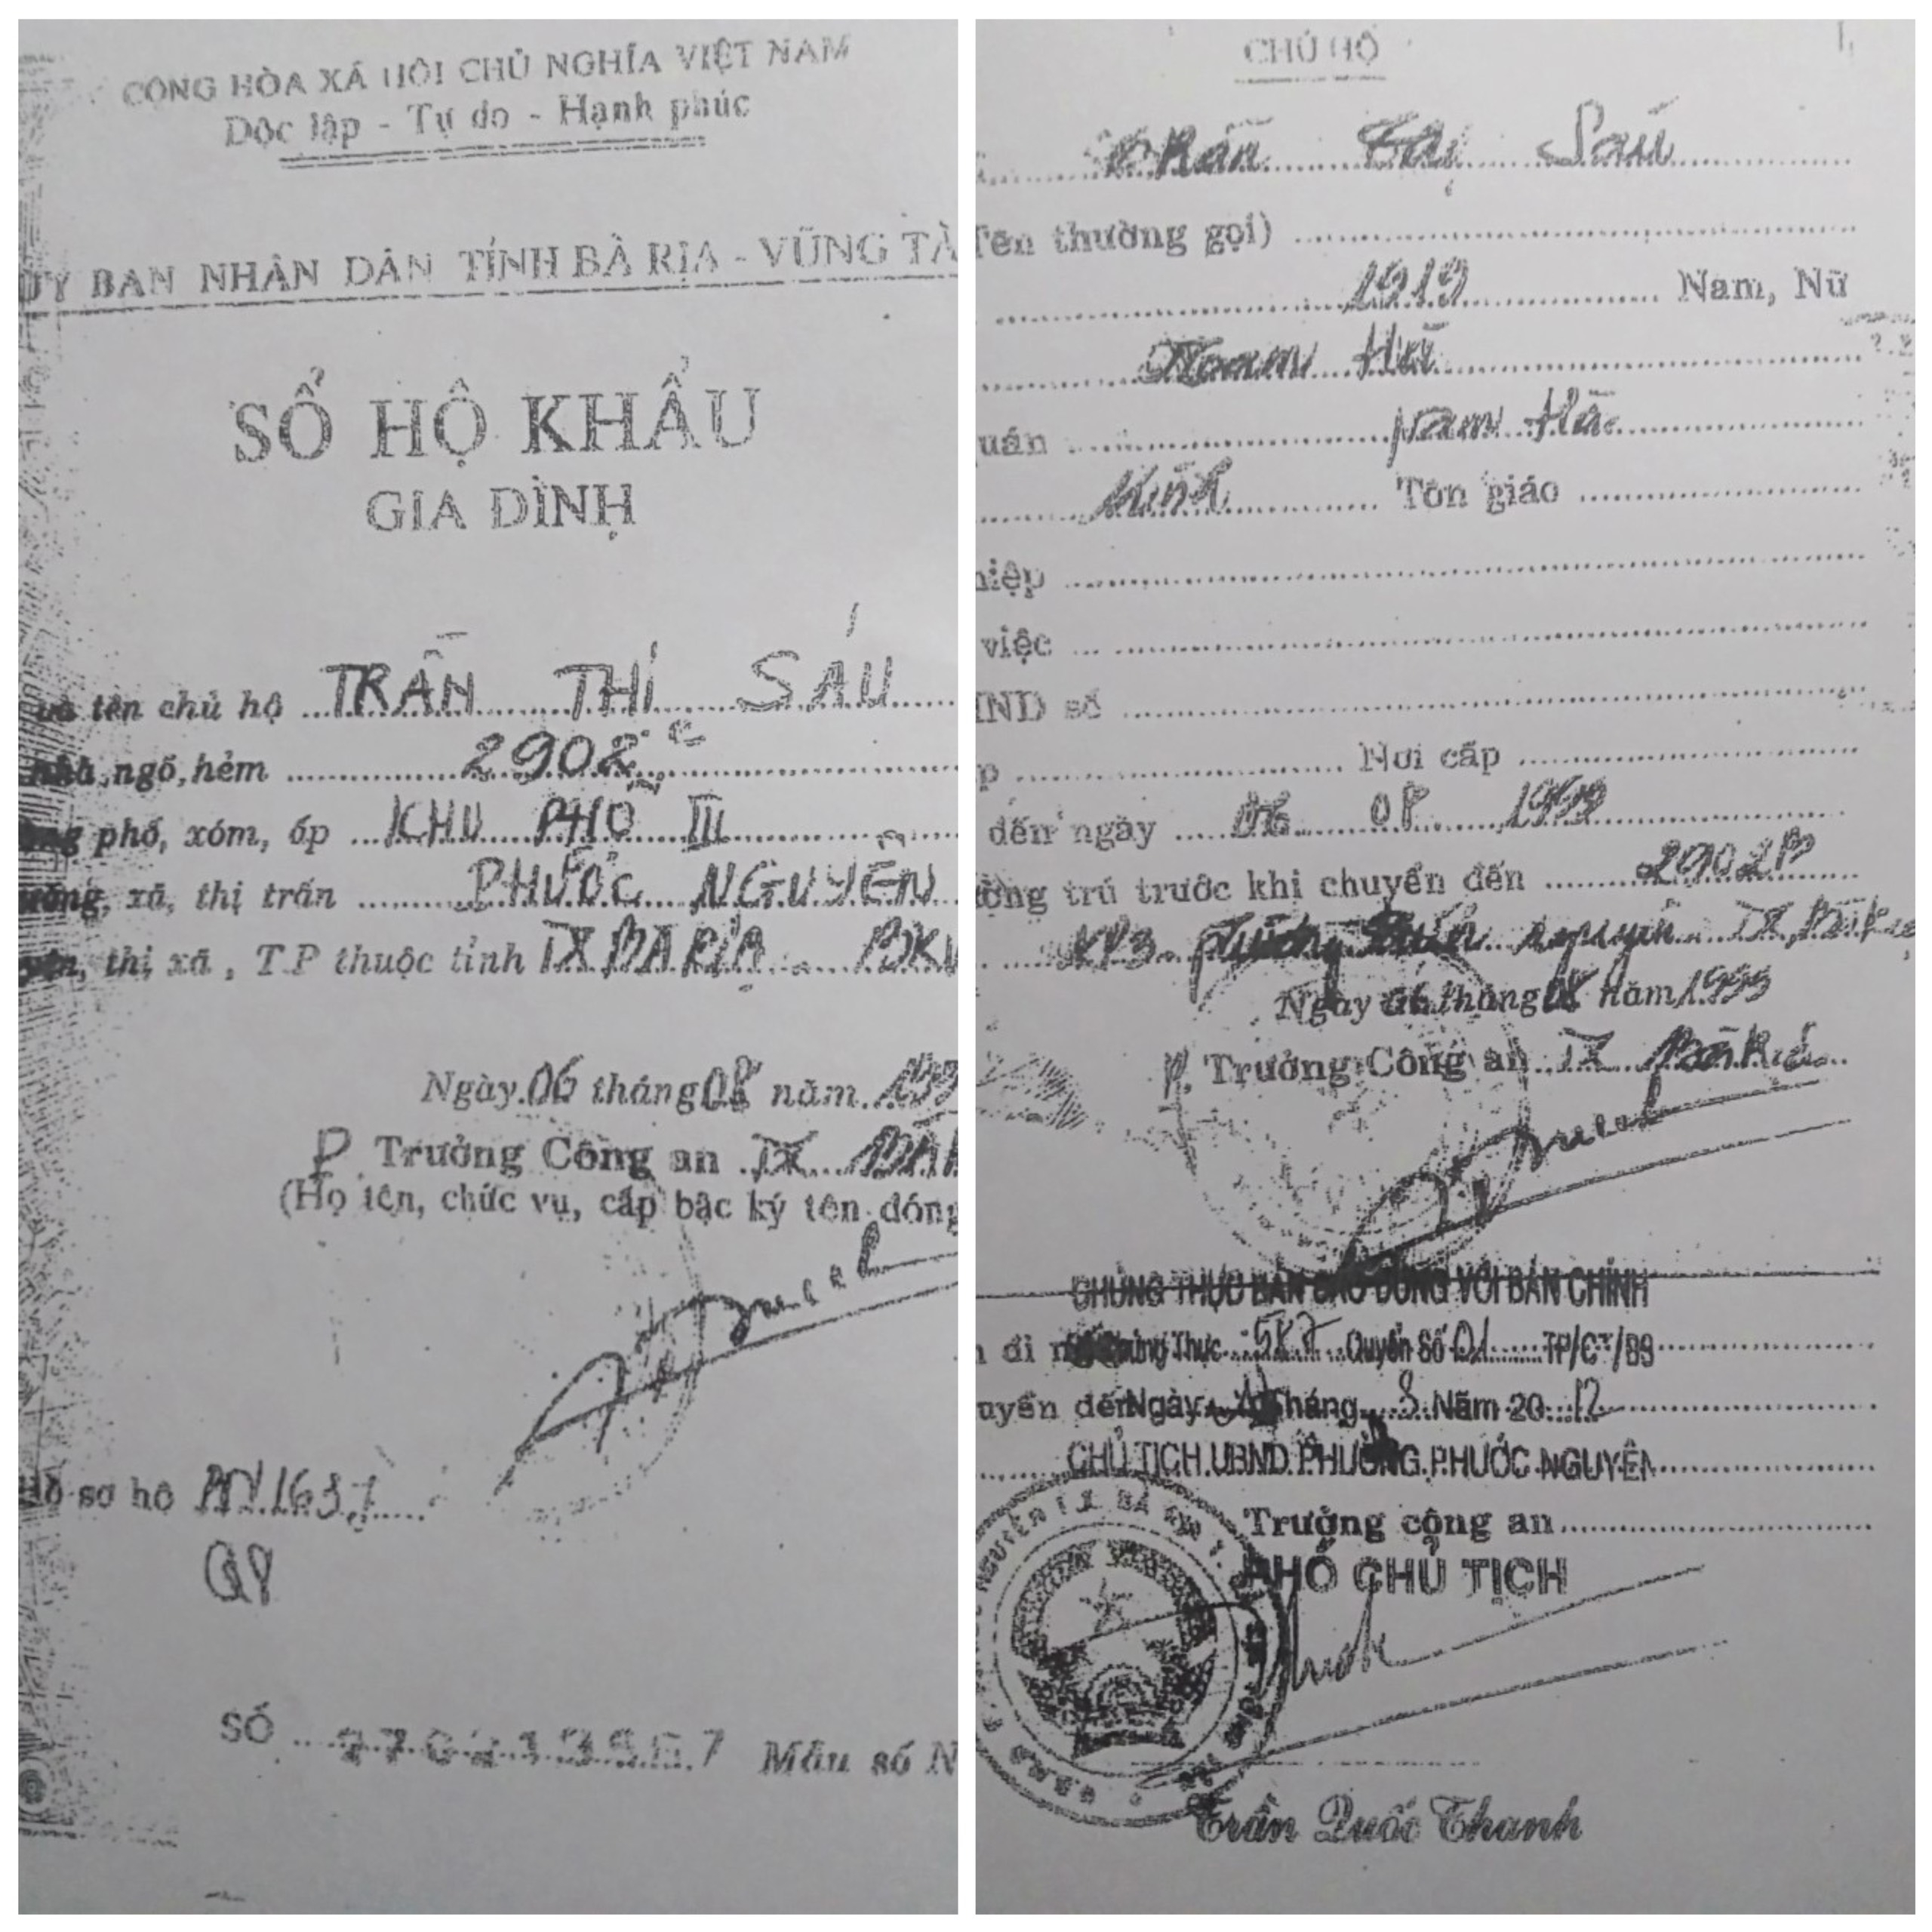 Sổ hộ khẩu của bà Trần Thị Sáu (sau khi bà mất ông Đằng đã đem nộp cho tư pháp phường).